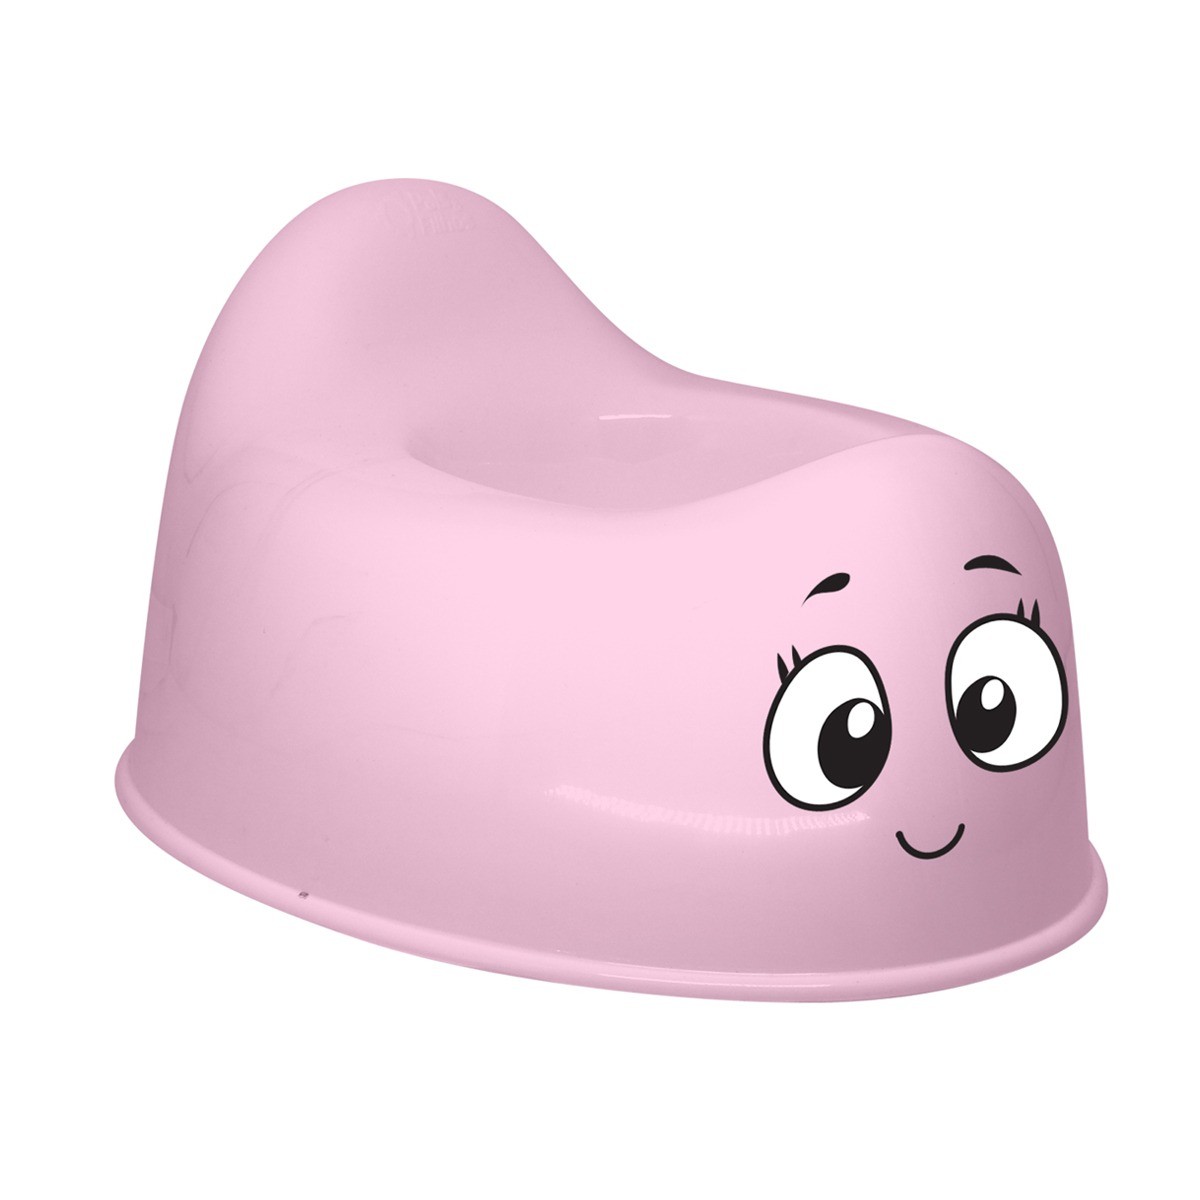 Troninho rosa com olhinho e boquinha-790007-78588